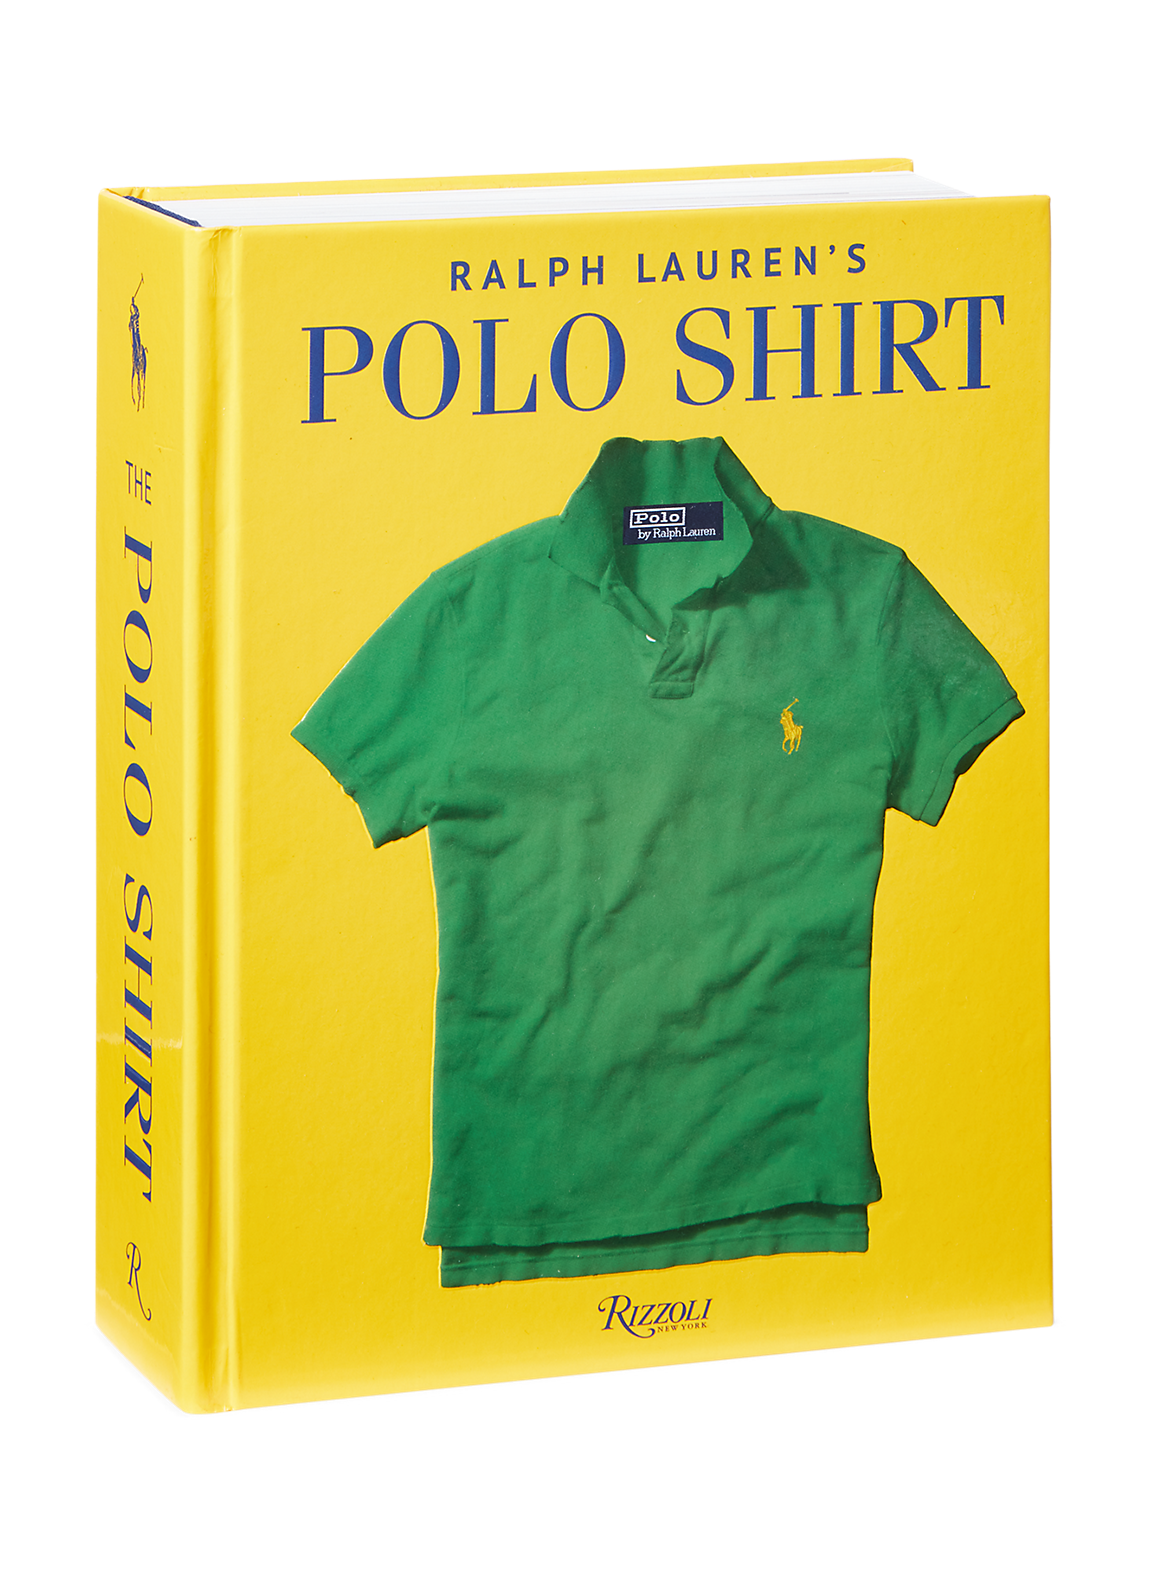 Ralph Lauren's ポロシャツ